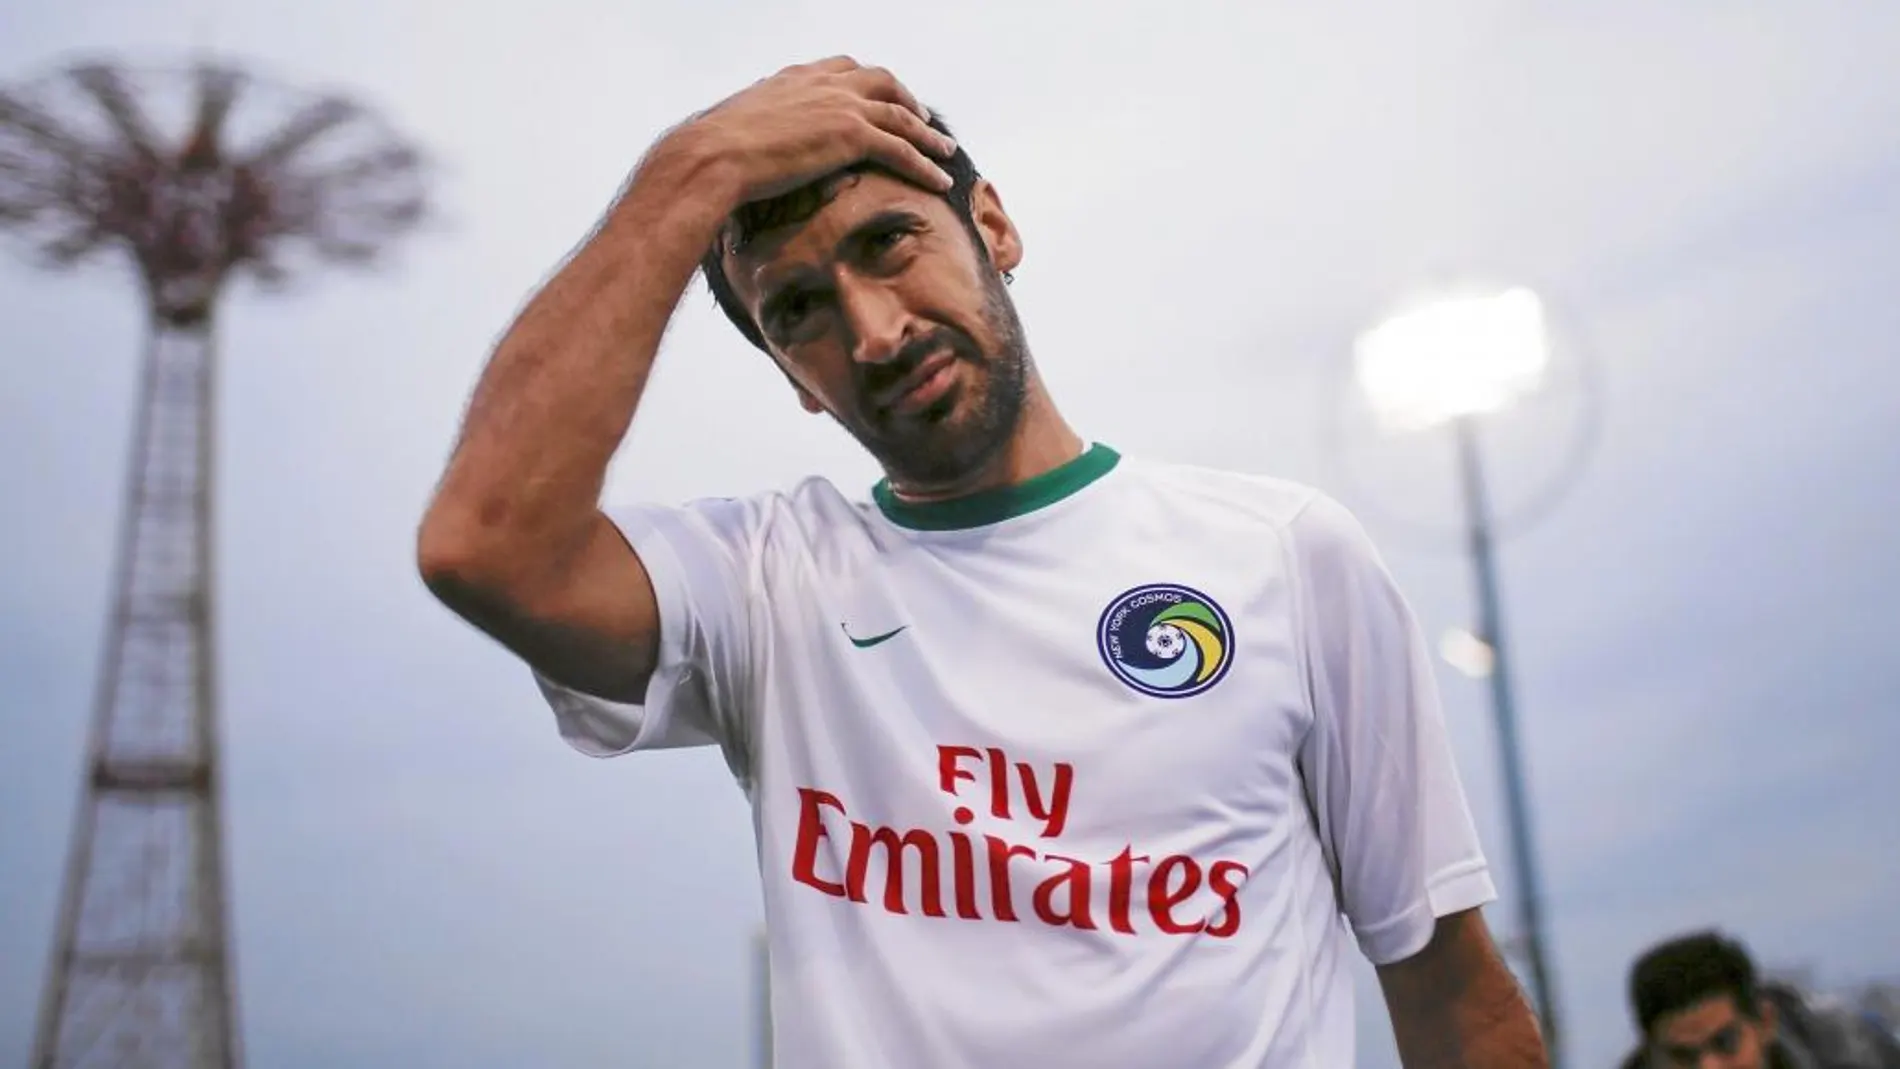 El Cosmos ha sido el último equipo de Raúl. En el Madrid se hizo un mito y también triunfó en el Schalke alemán